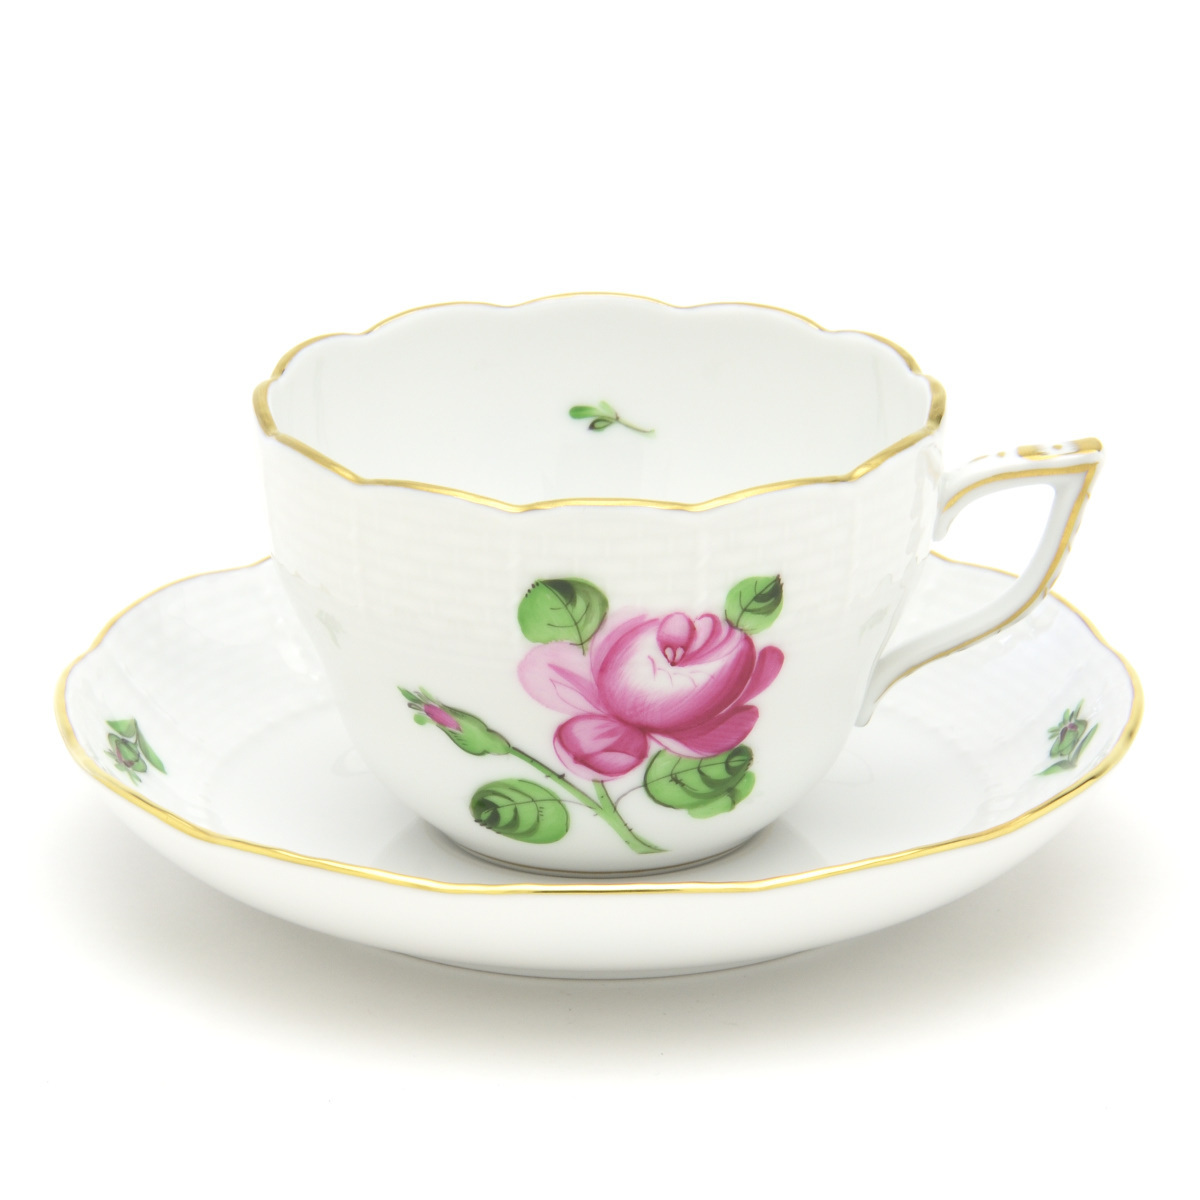 赫伦德 两用杯碟 玫瑰与花蕾 手绘瓷西餐具 咖啡/茶杯餐具 匈牙利制造 新赫伦德, 茶具, 杯子和碟子, 咖啡, 无论是茶还是茶